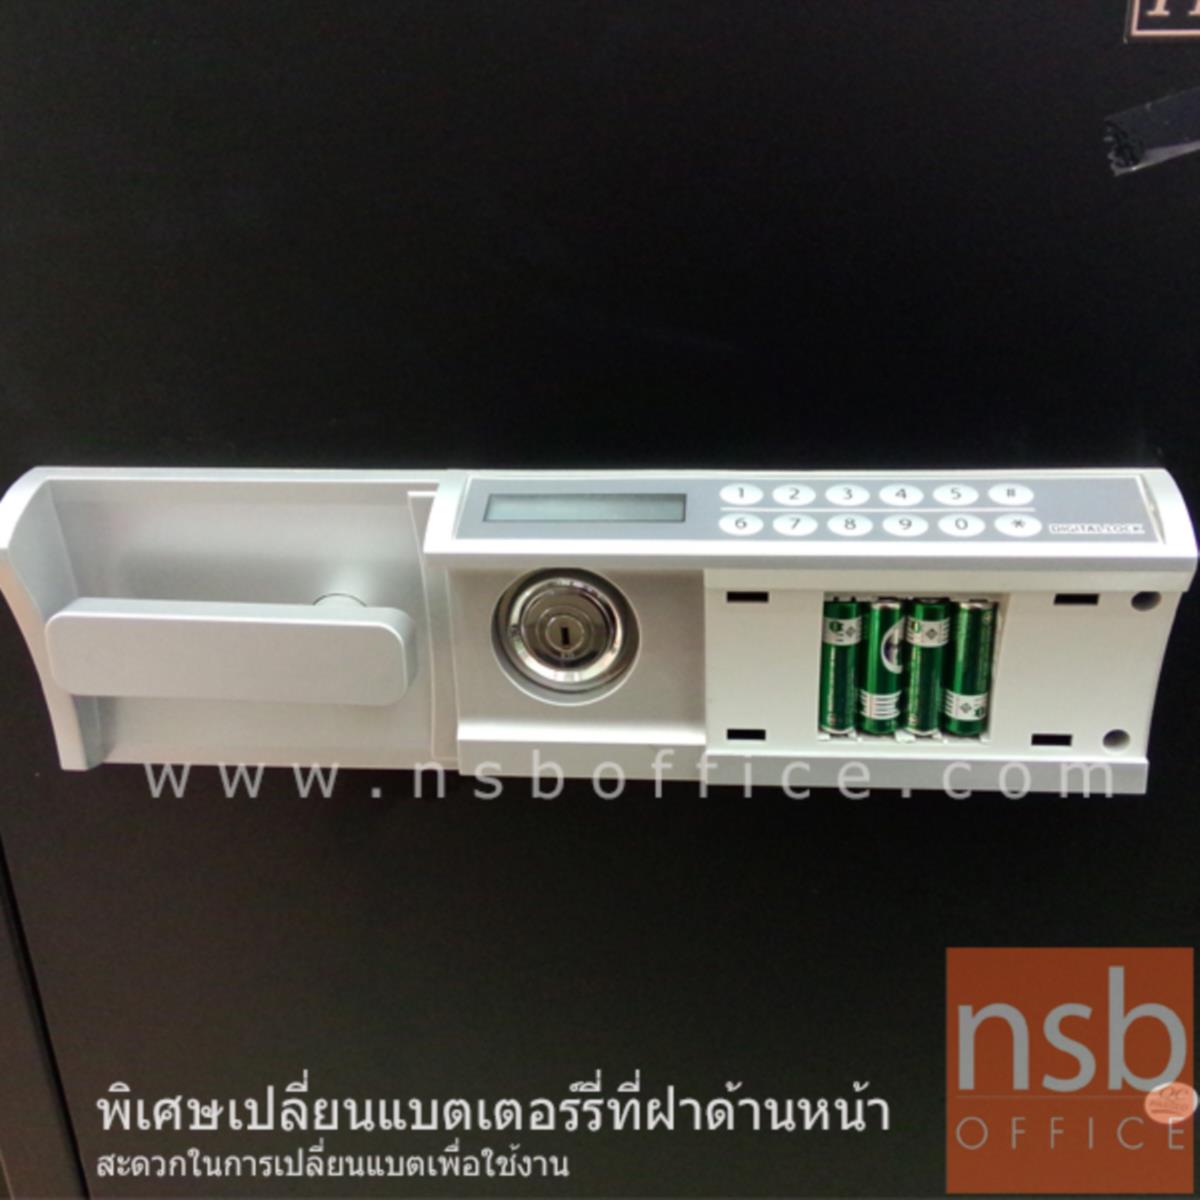 ตู้เซฟดิจิตอล 50 กก. แนวตั้ง รุ่น PRESIDENT-SS2D2  มี 1 กุญแจ 1 รหัส (รหัสใช้กดหน้าตู้)